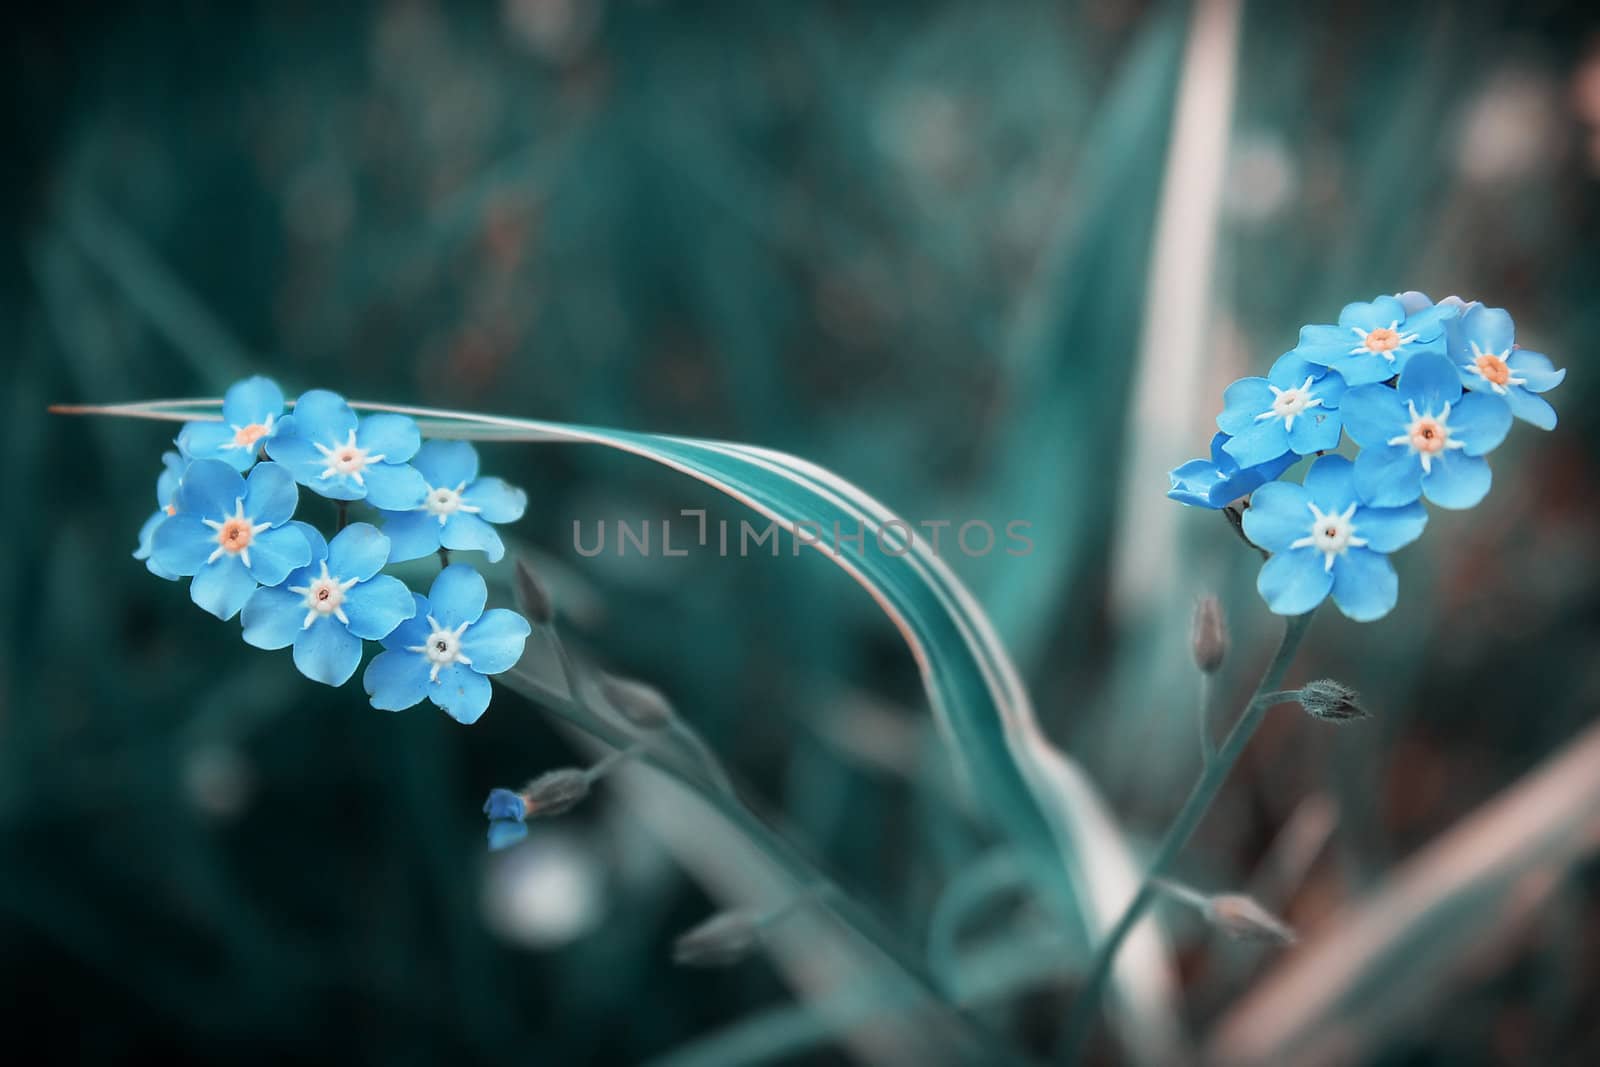 Blue flowers on dark background